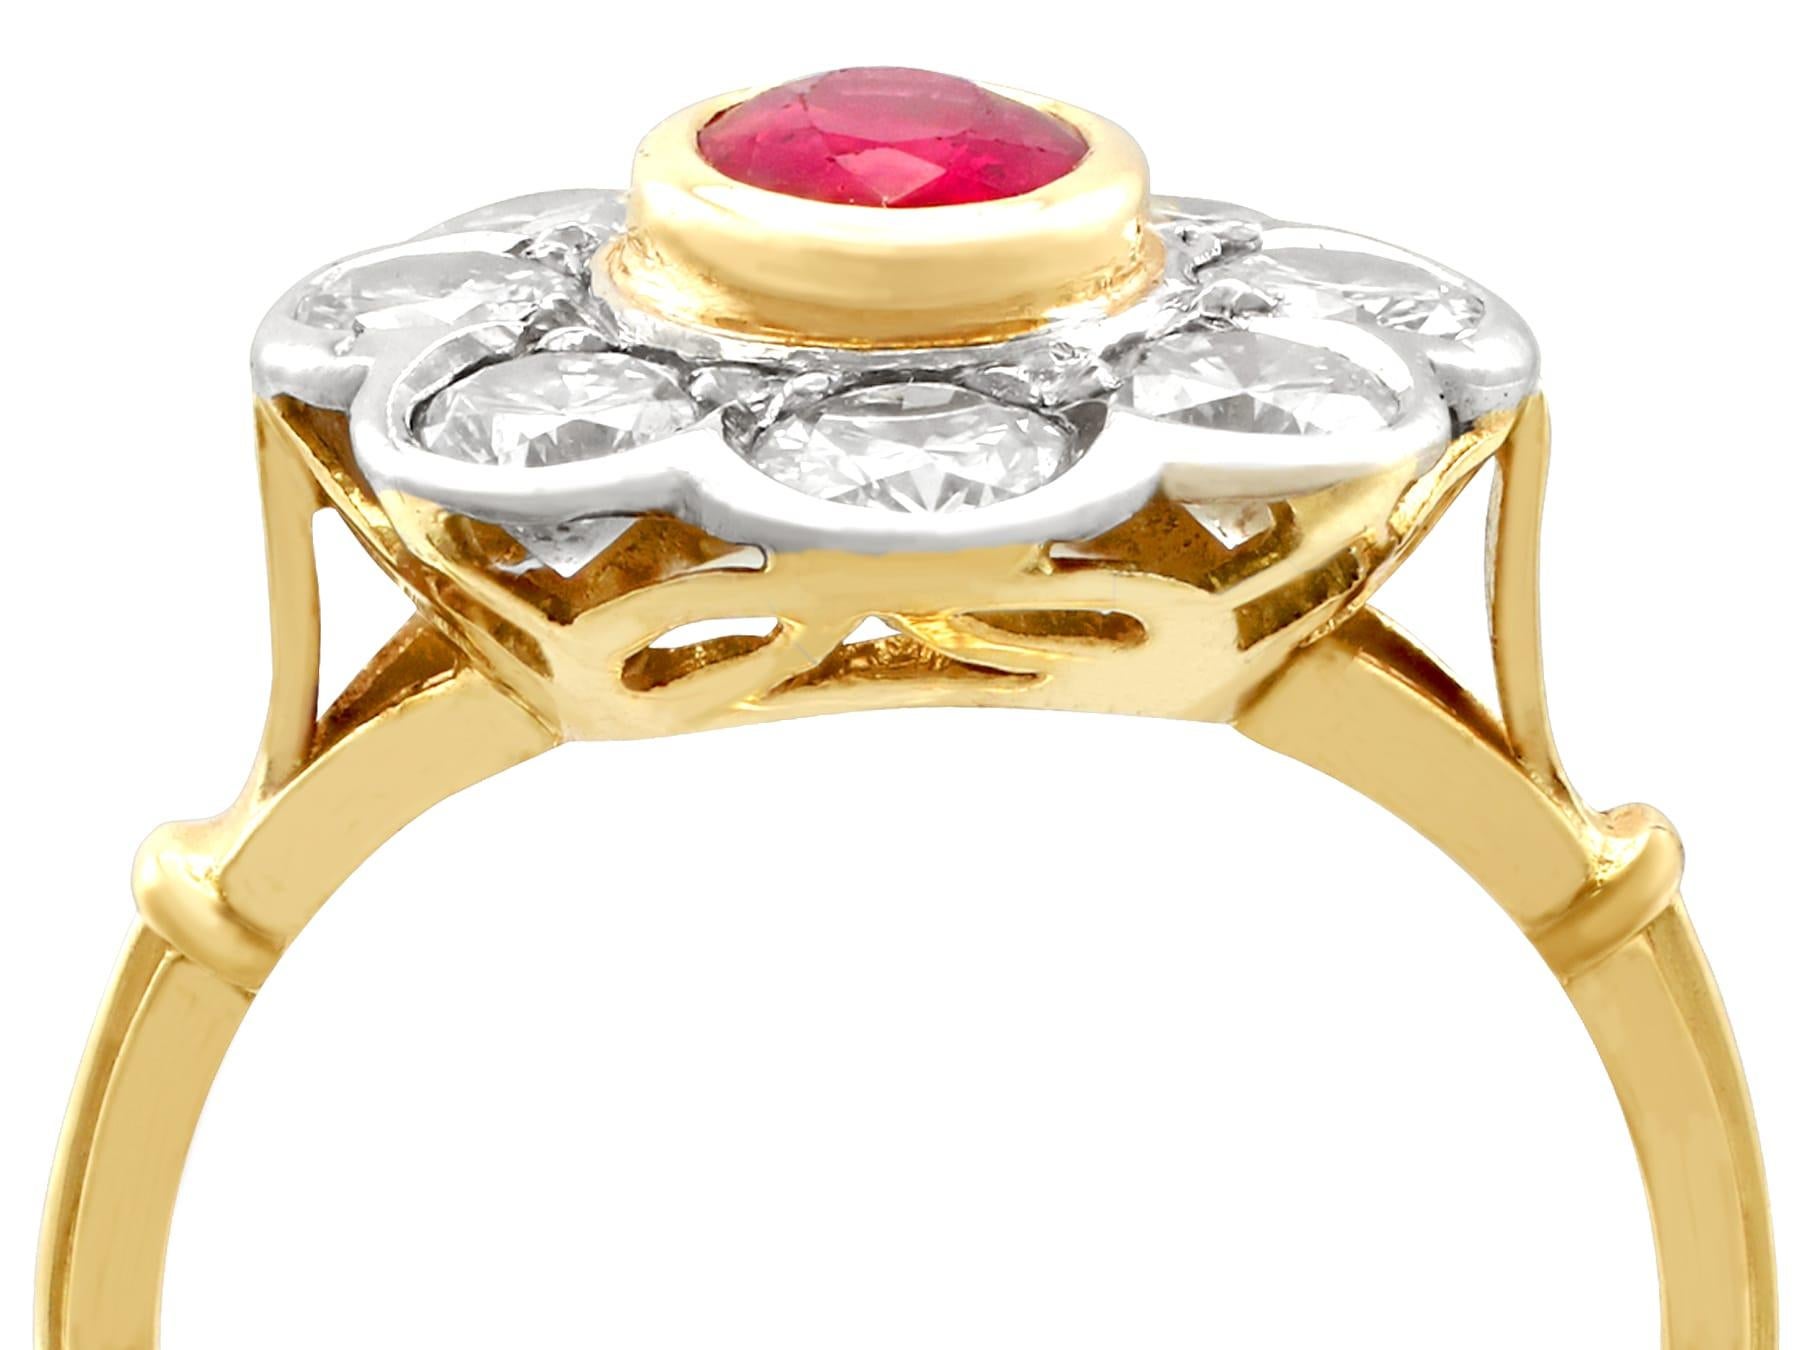 Eine feine und beeindruckende Vintage Französisch 2,05 Karat Diamant, Rubin farbigen Doublette (künstlich) und 18k Gelbgold, 18k Weißgold gesetzt Cluster-Ring; Teil unserer Vintage-Schmuck und Nachlass-Schmuck-Kollektionen.

Dieser feine